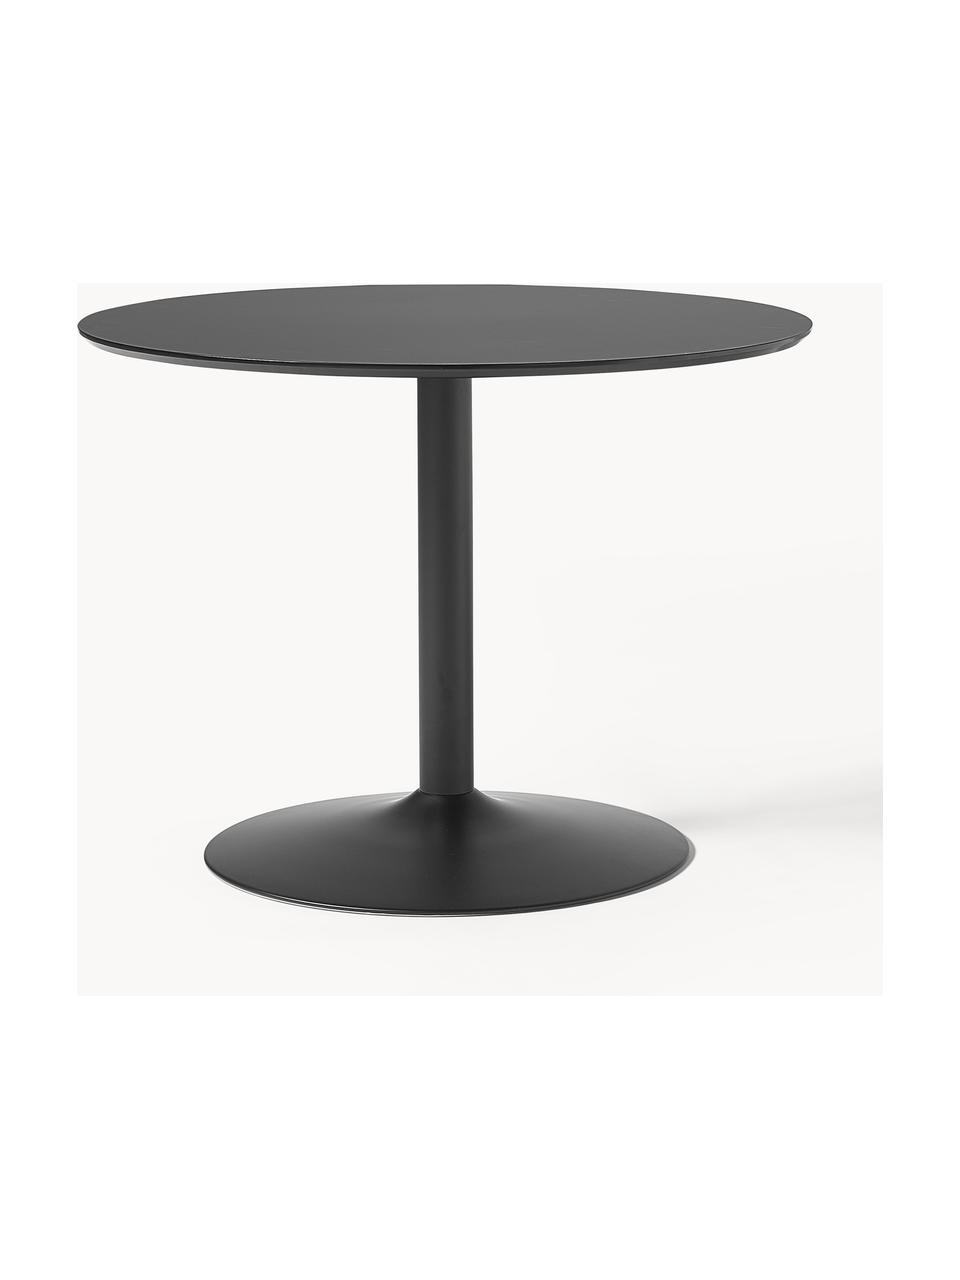 Okrągły stół do jadalni Menorca, Ø 100 cm, Blat: laminat wysokociśnieniowy, Noga: metal malowany proszkowo, Czarny, Ø 100 cm